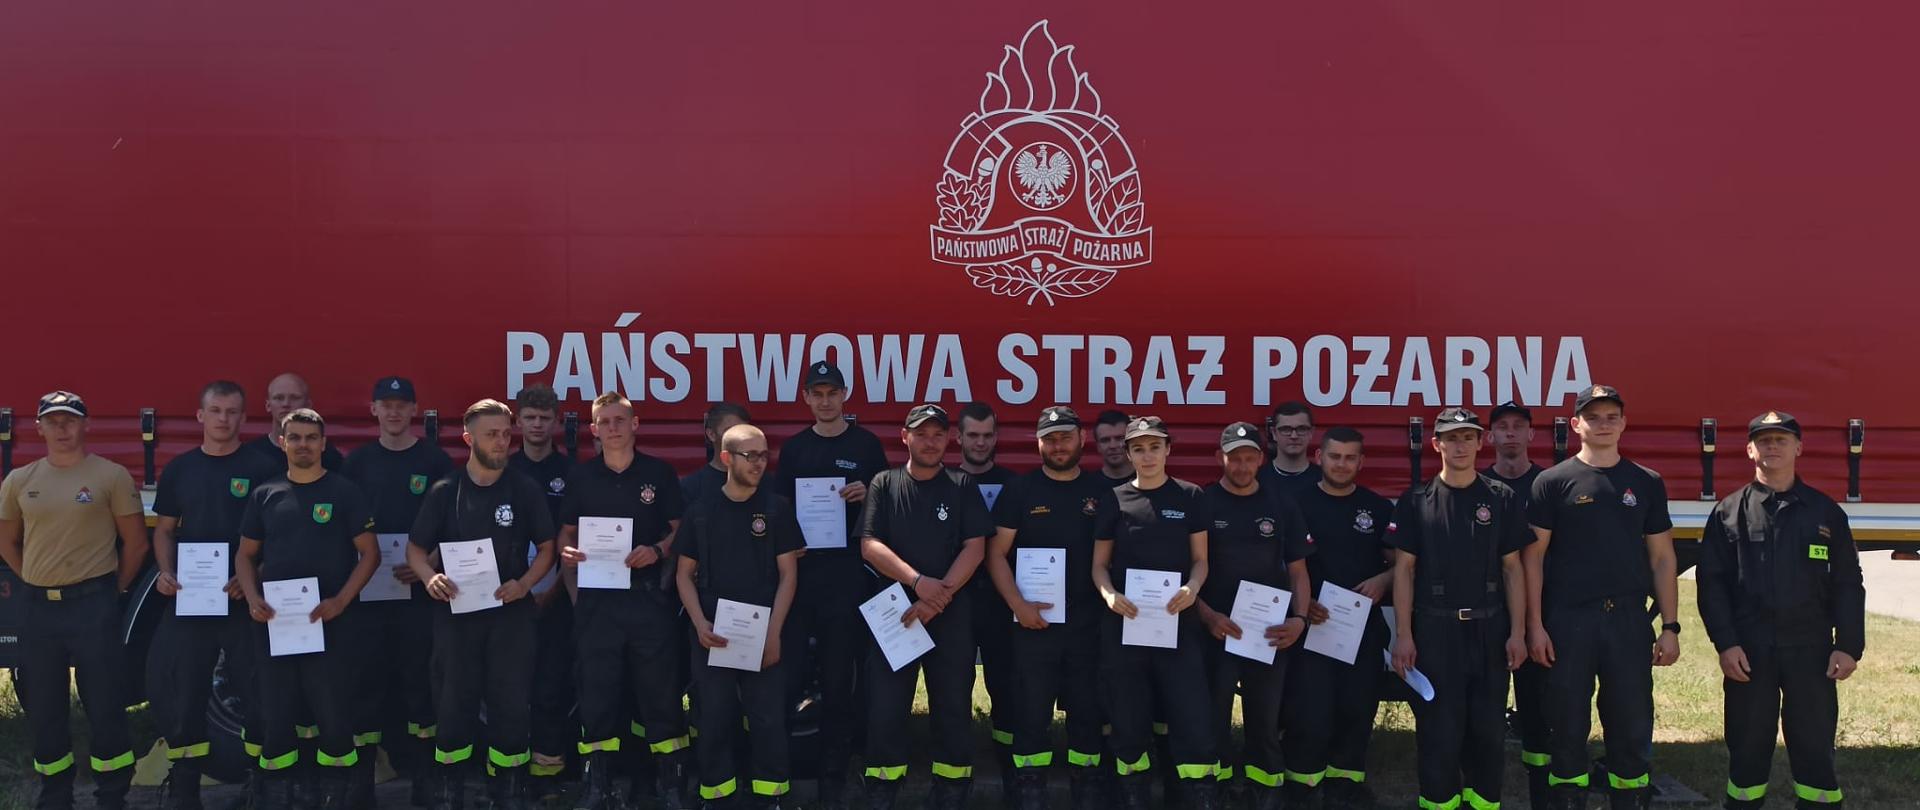 Zdjęcie grupowe kursantów z zaświadczeniami na tle naczepy strażackiej z logiem i napisem Państwowa Straż Pożarna.